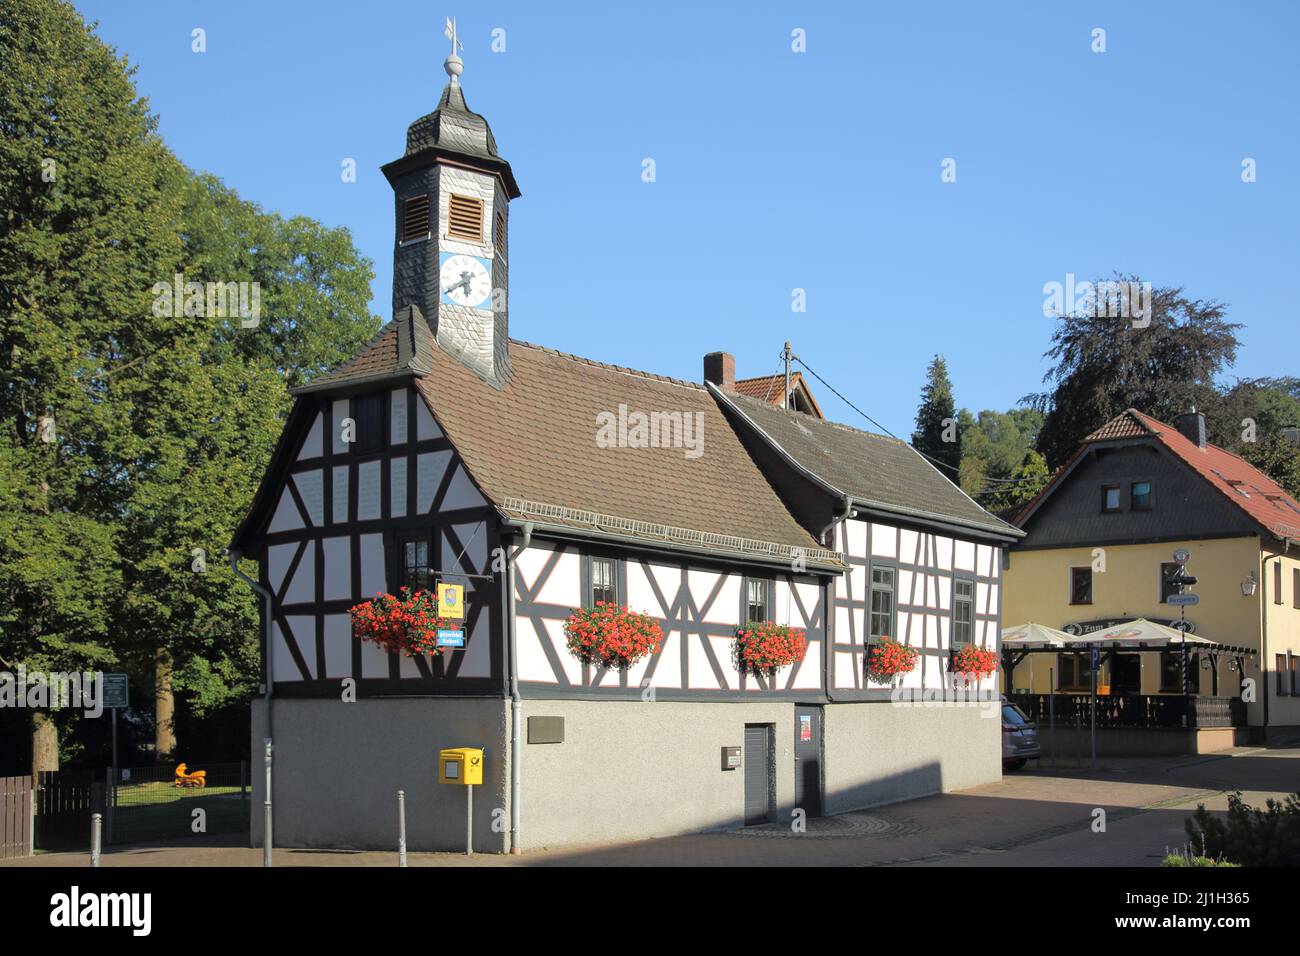 Historic town hall in Engenhahn im Taunus, Hesse, Germany Stock Photo